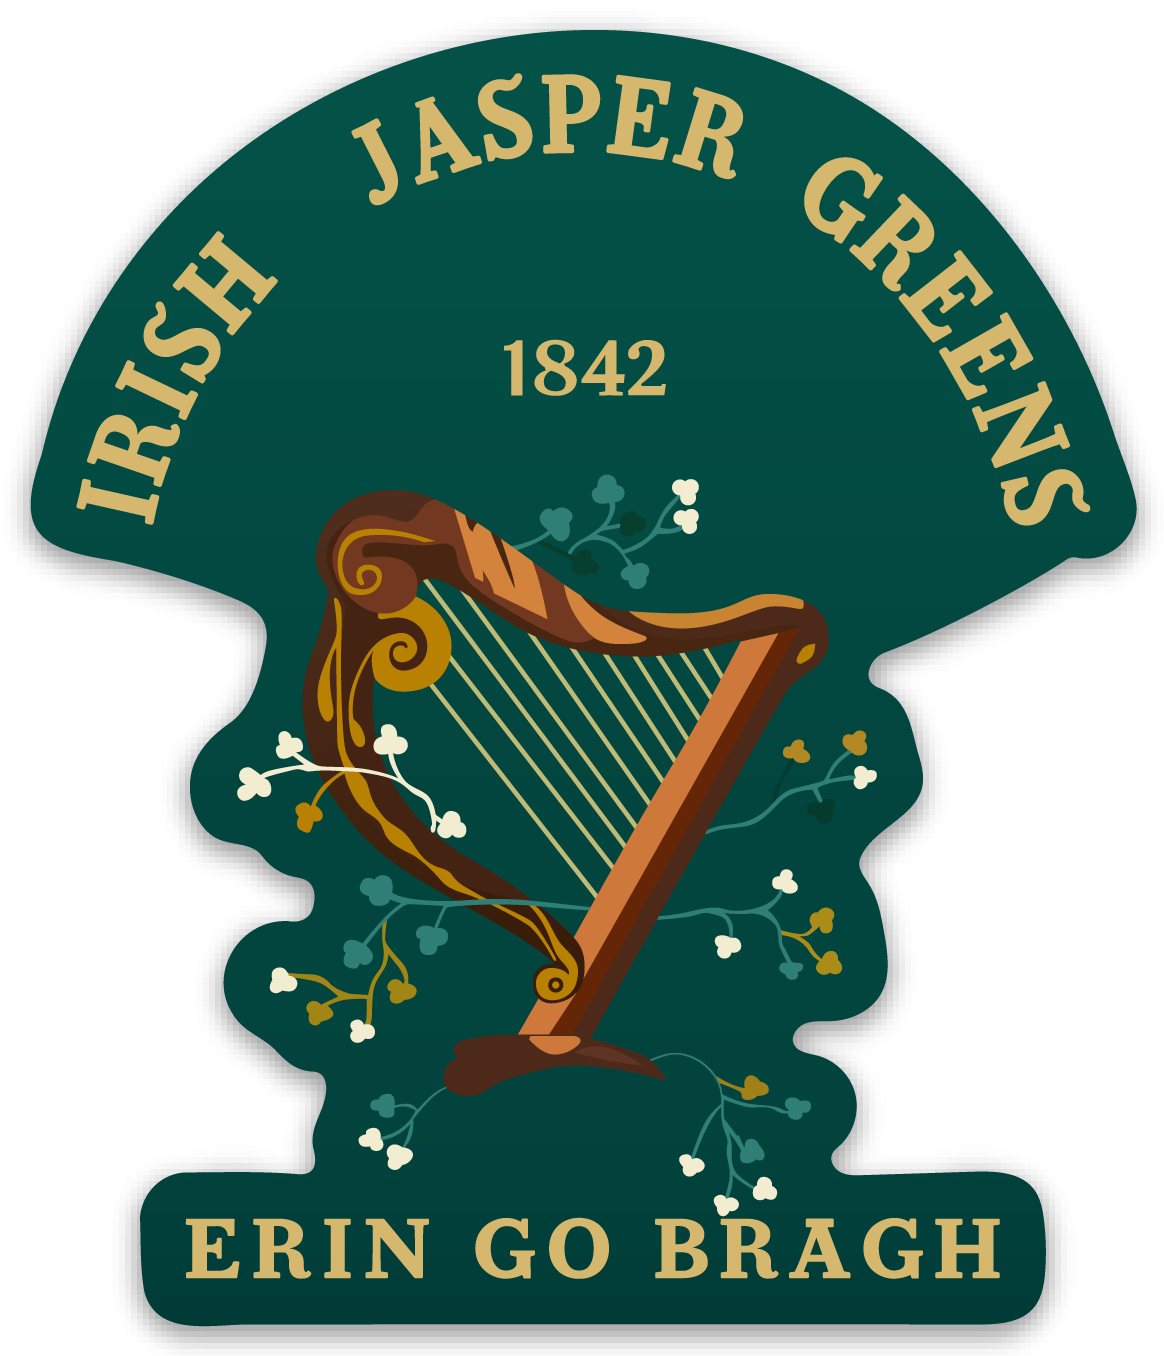 Irish Jasper Greens Flag Stickers/Magnets